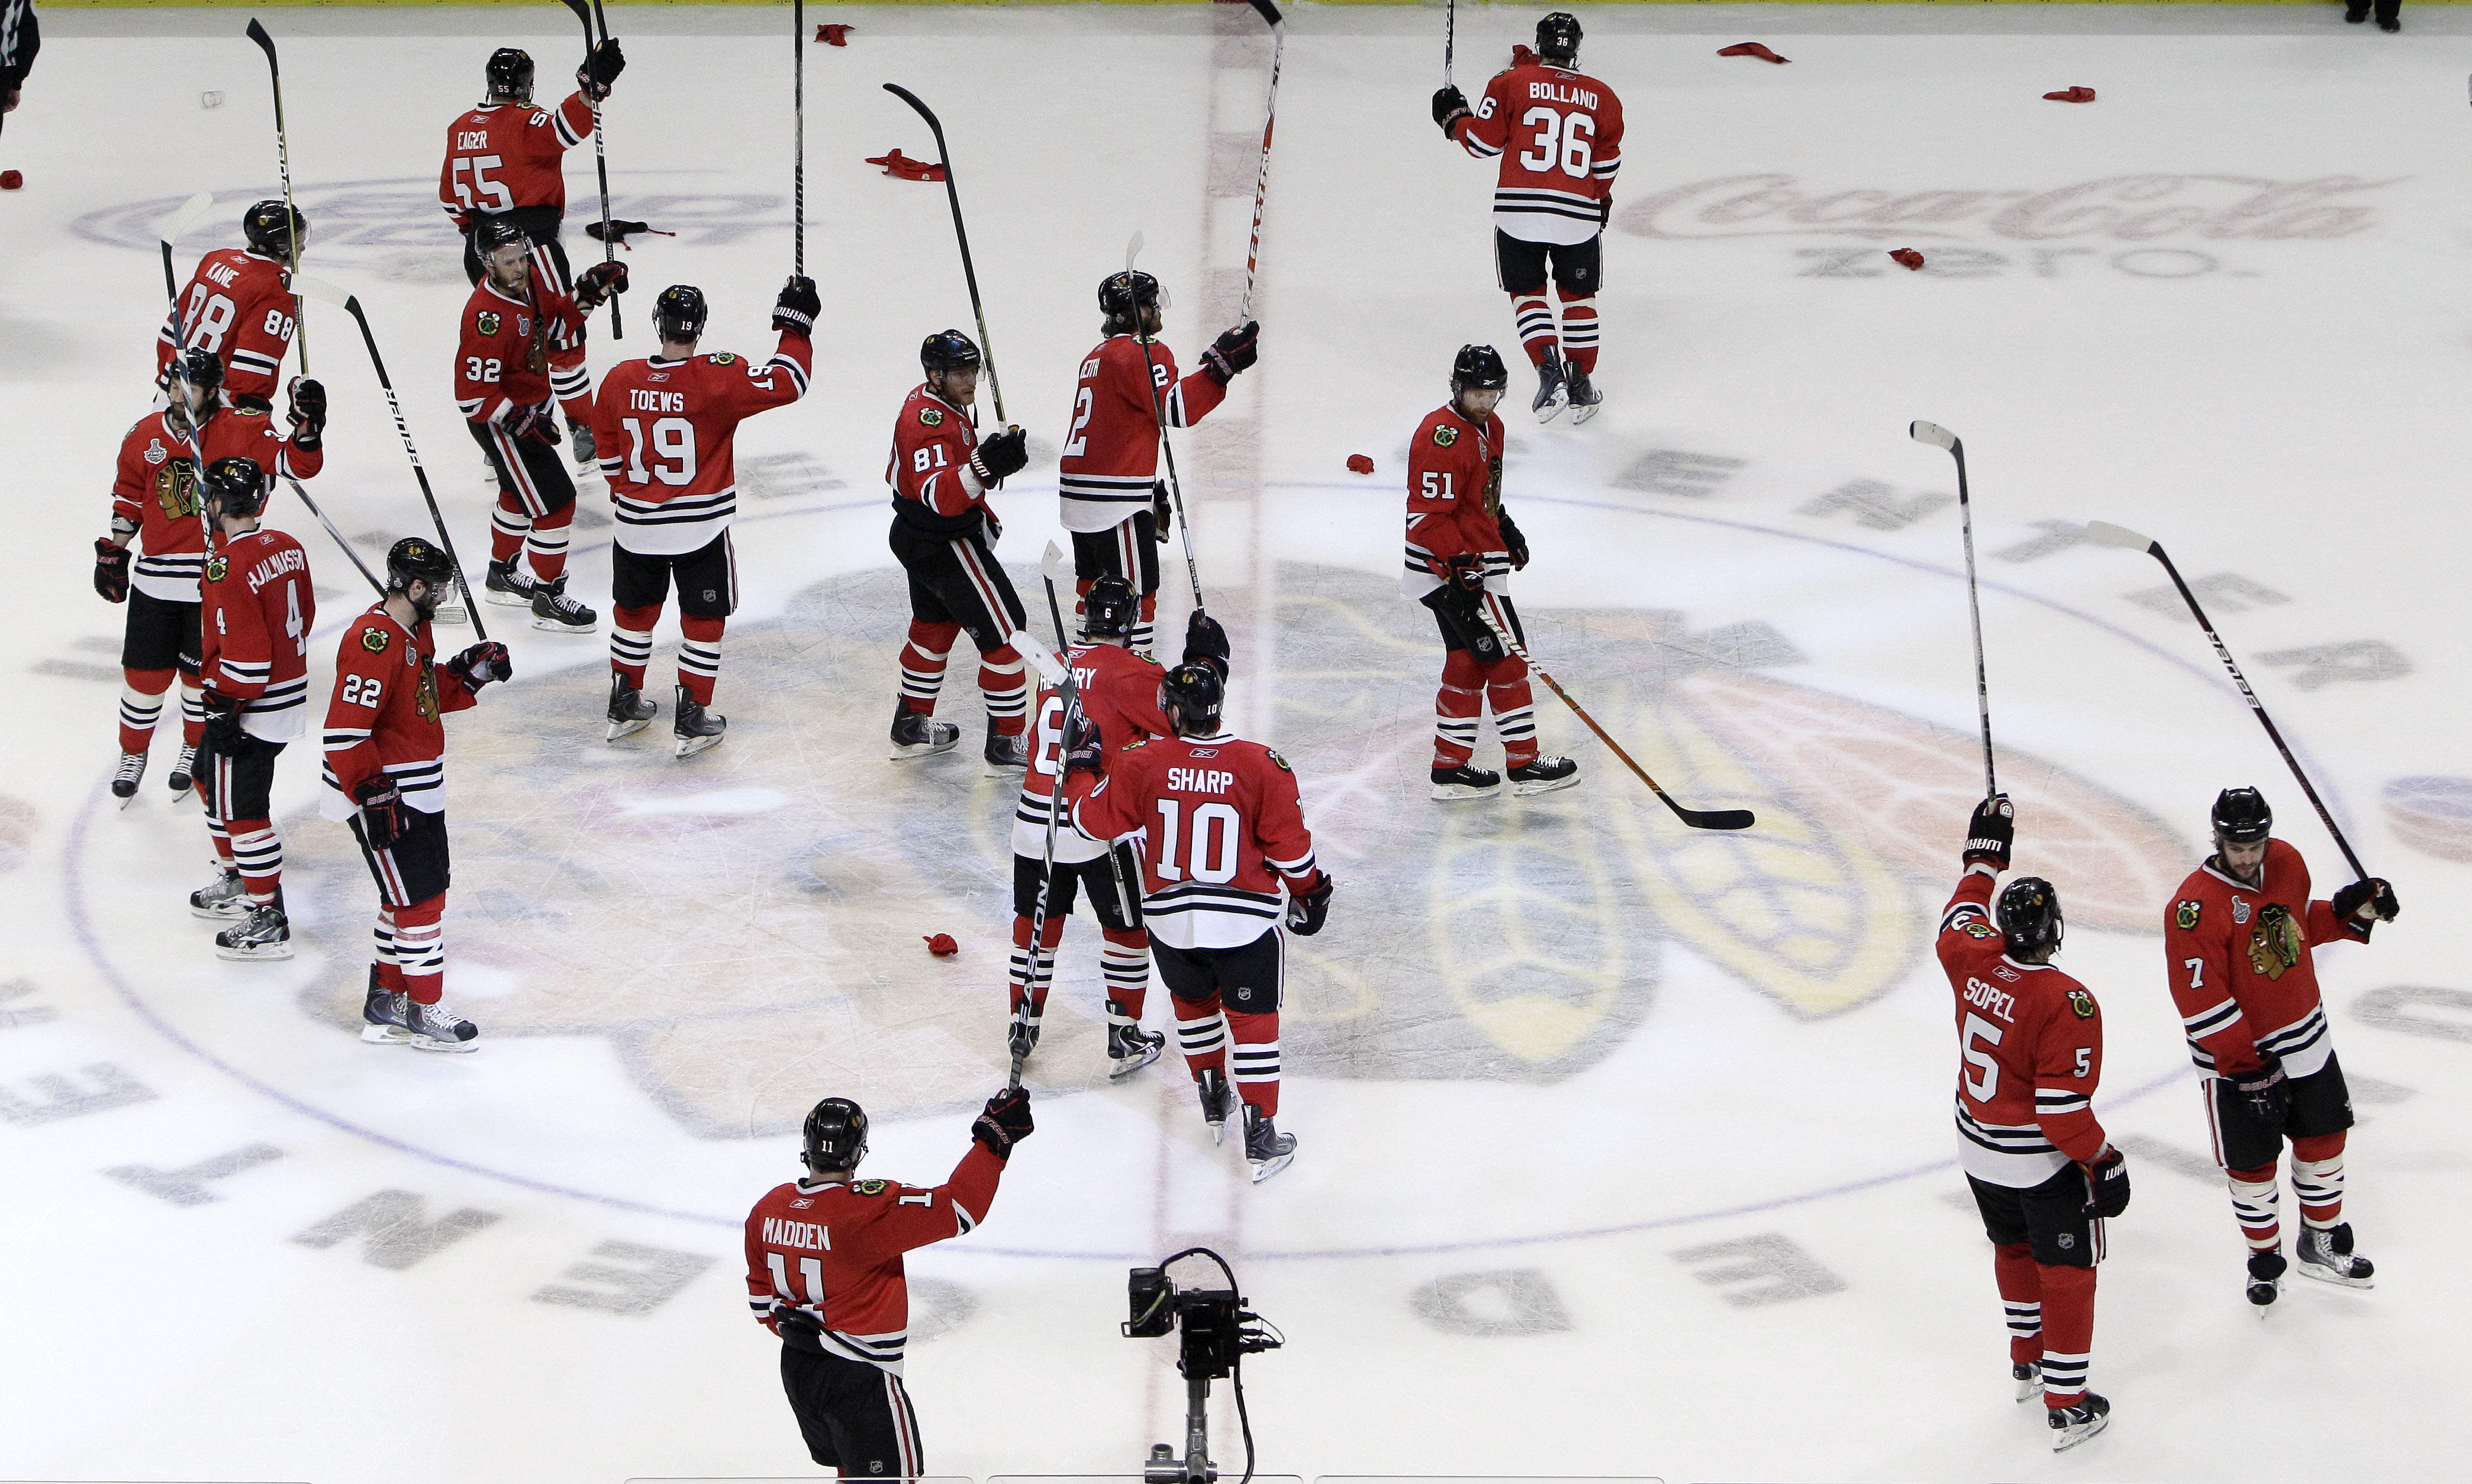 Chicagospelarna jublar efter att ha tagit en 2-0-ledning i Stanley Cup-finalen. 